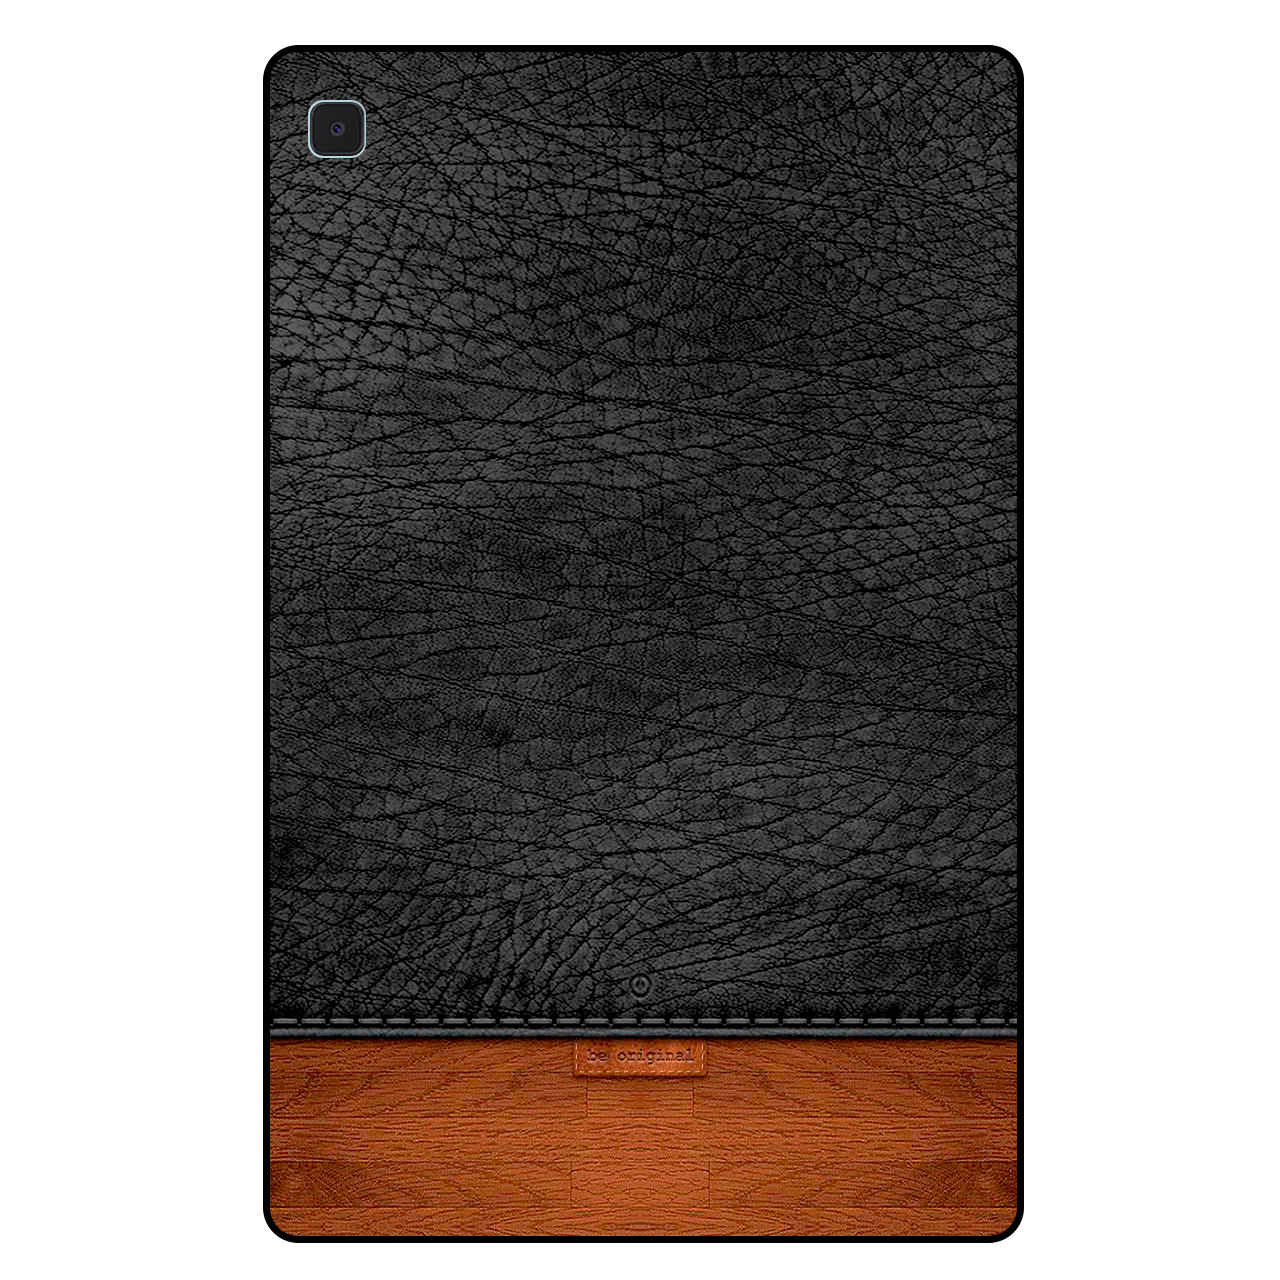 کاور مگافون کد 4153 مناسب برای تبلت سامسونگ Galaxy Tab S6 Lite 10.4 2020 / P610 / P615